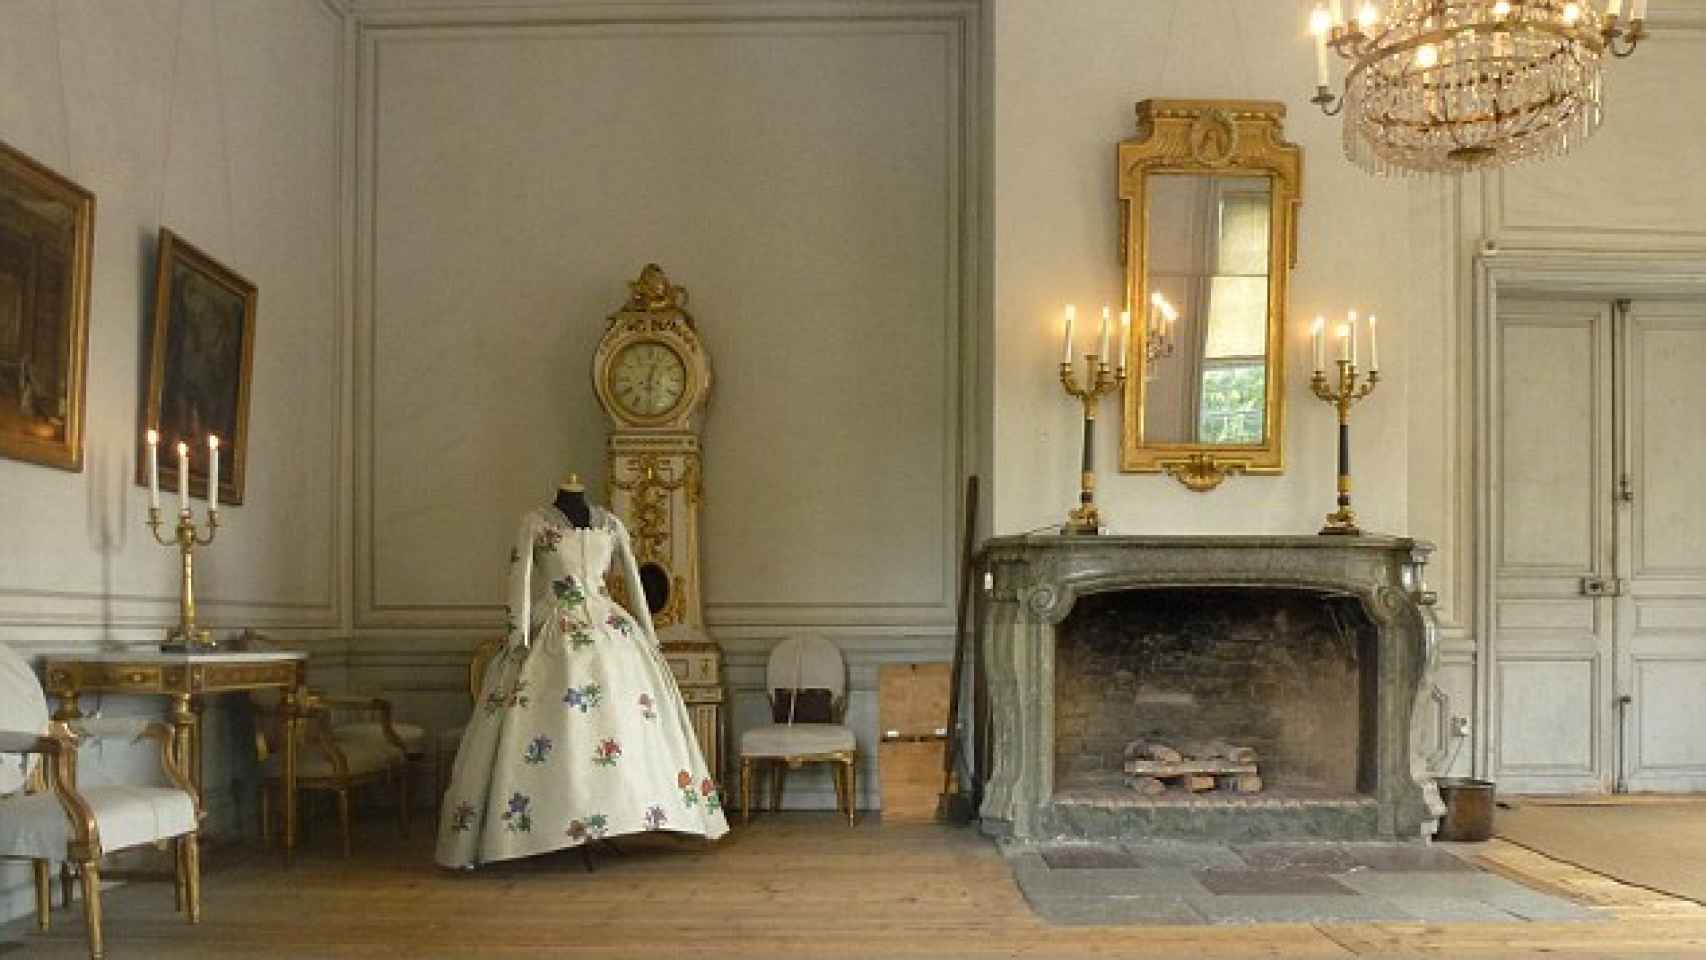 Una de las salas de la residencia de los reyes suecos, donde vivirían los fantasmas.